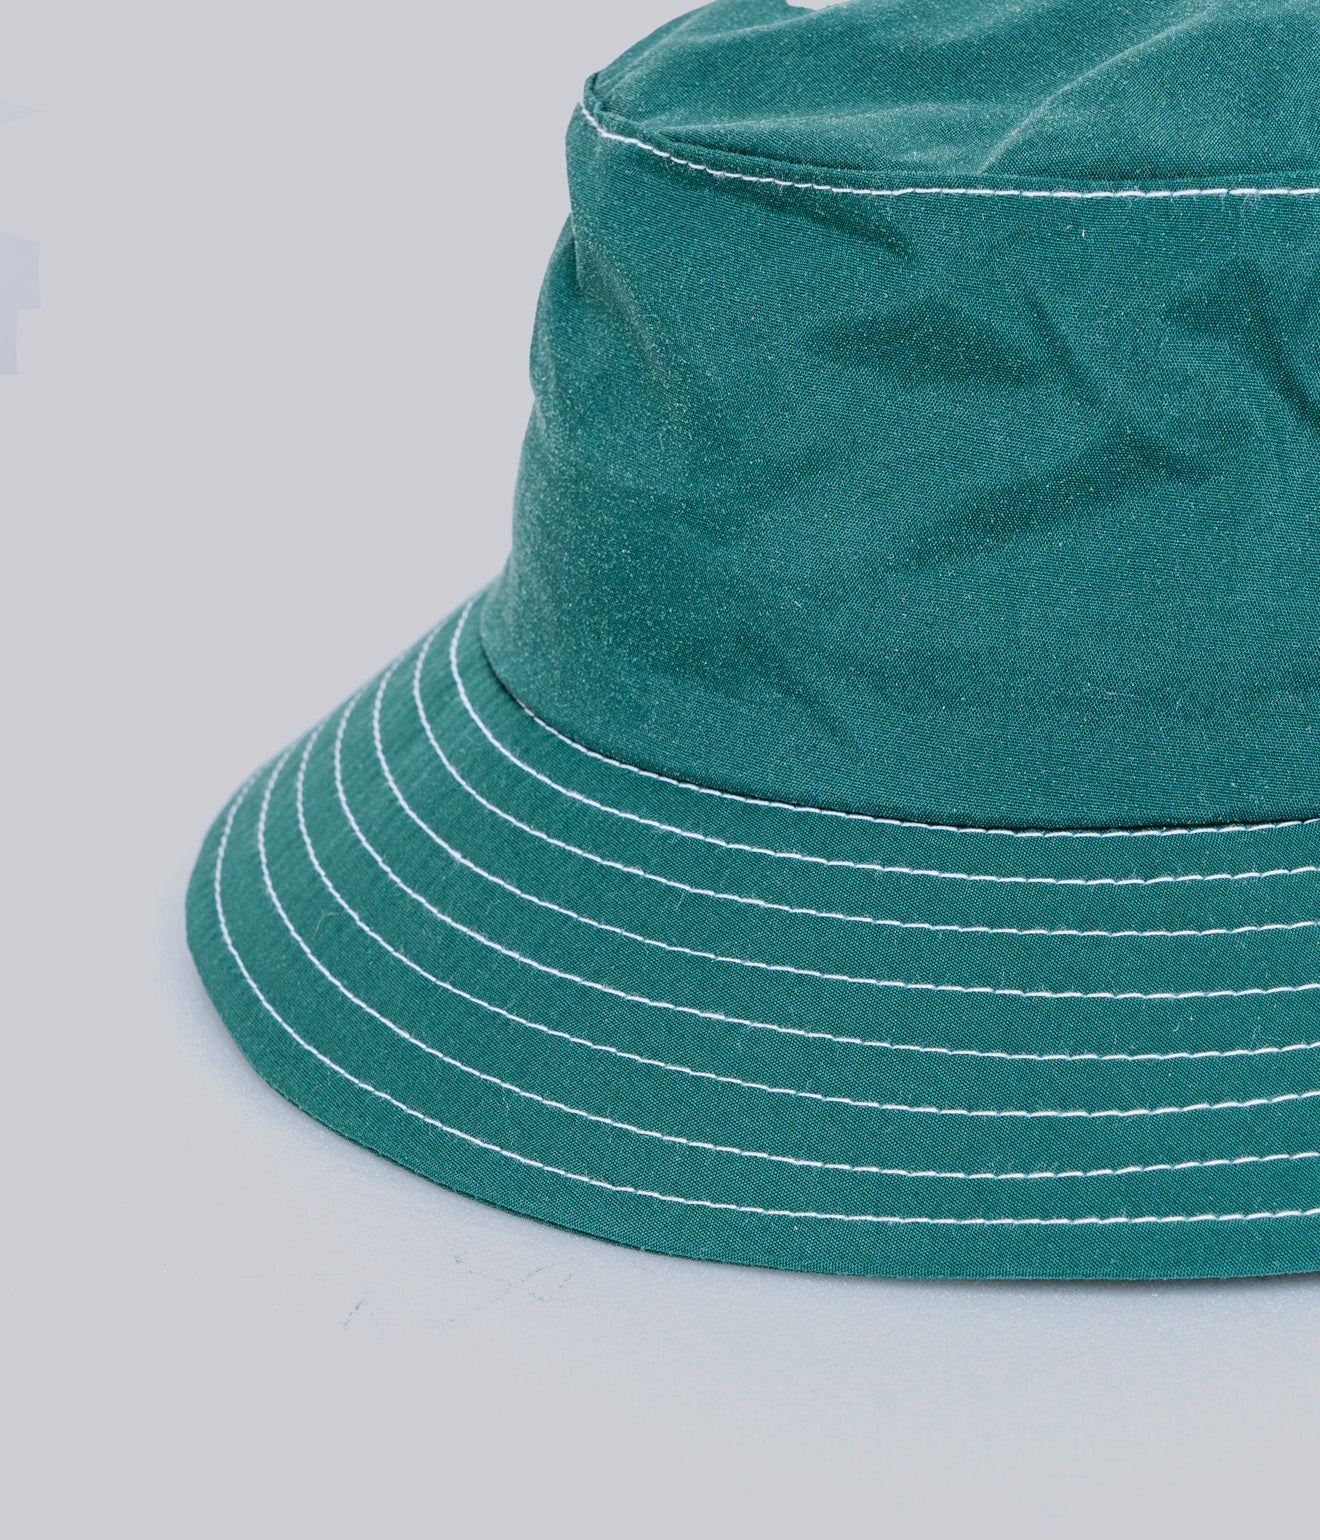 LITE YEAR "Japanese Nylon Taffeta Bucket Hat" Varsity Green - WEAREALLANIMALS